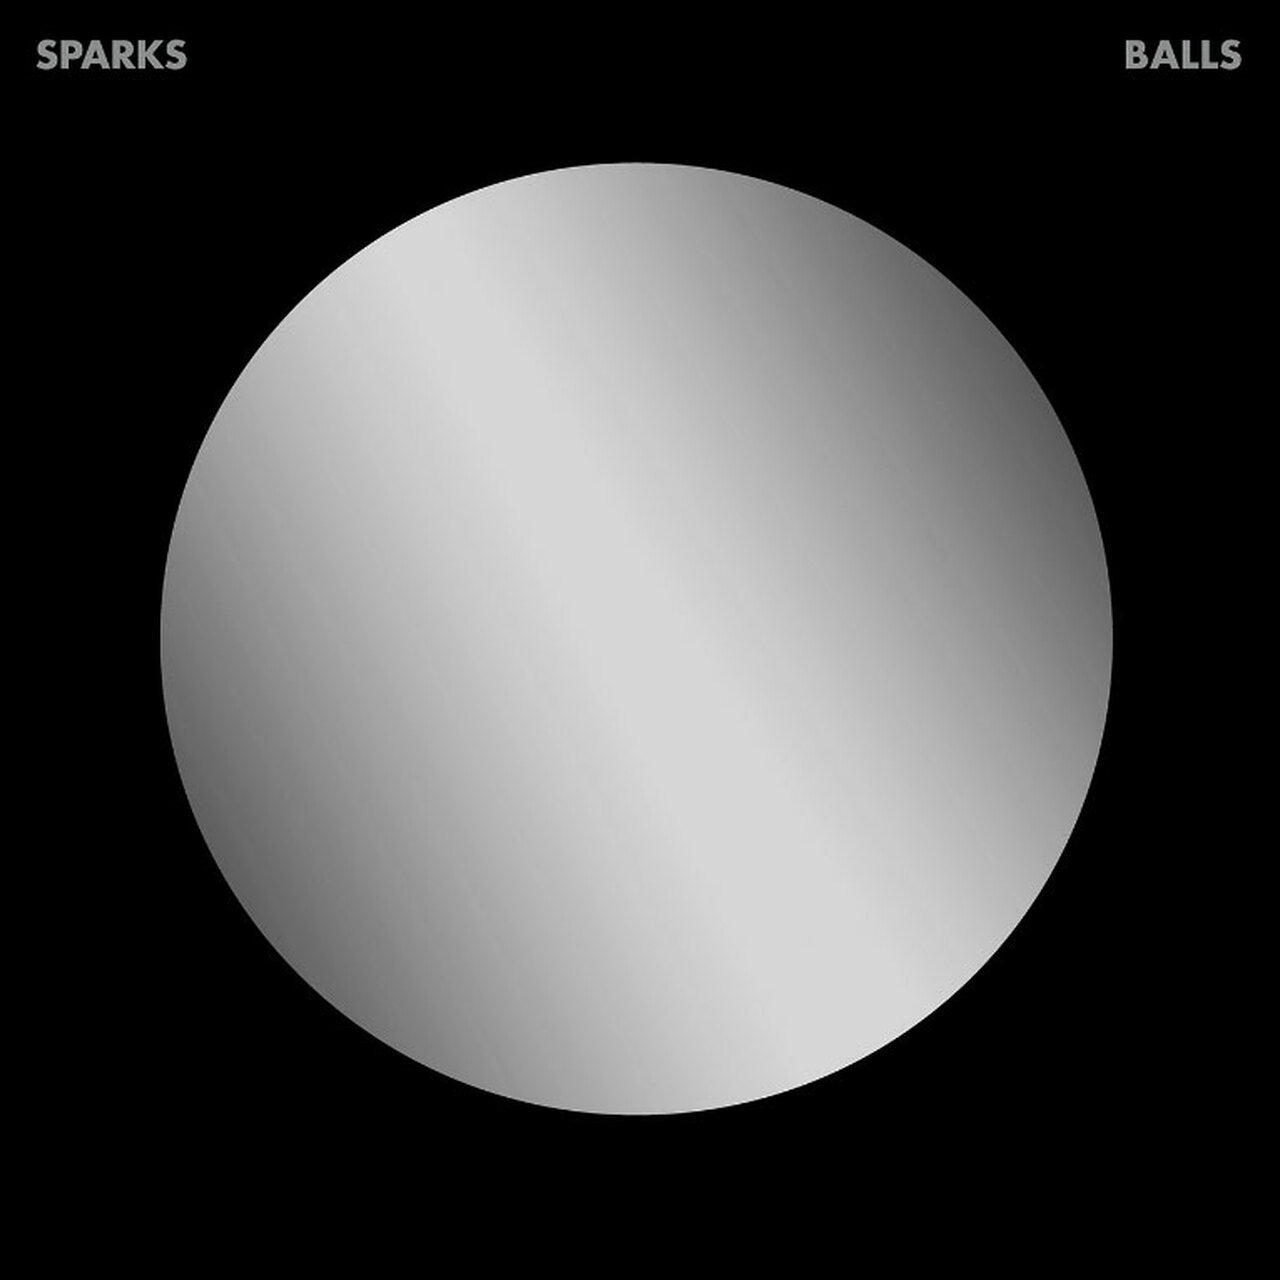 SPARKS 'BALLS' 2LP